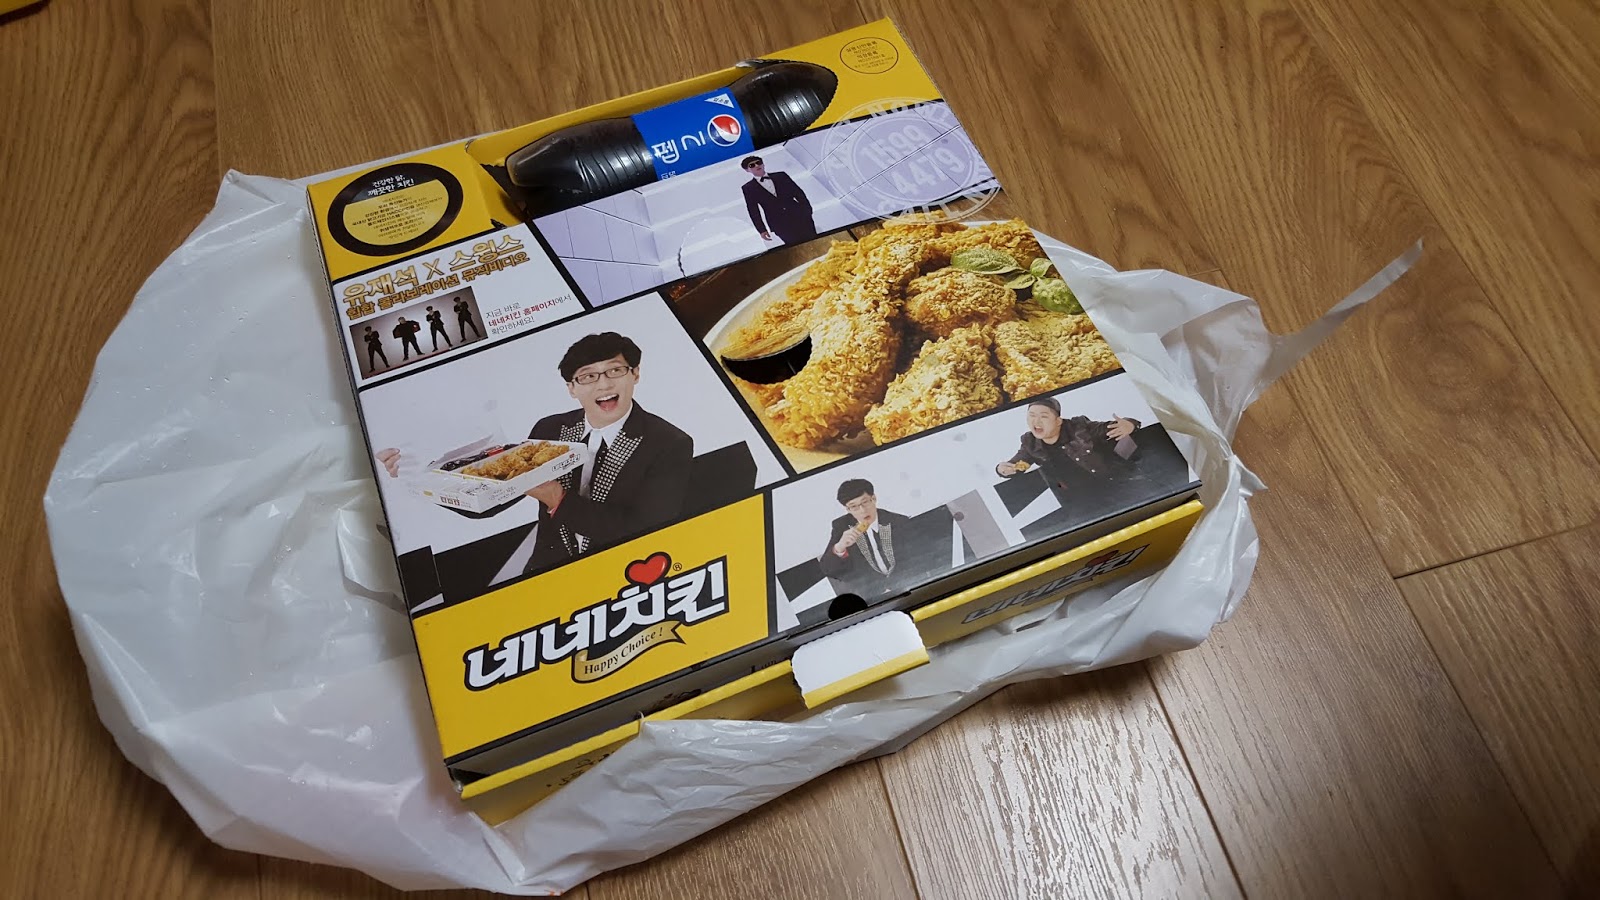 韓式炸雞